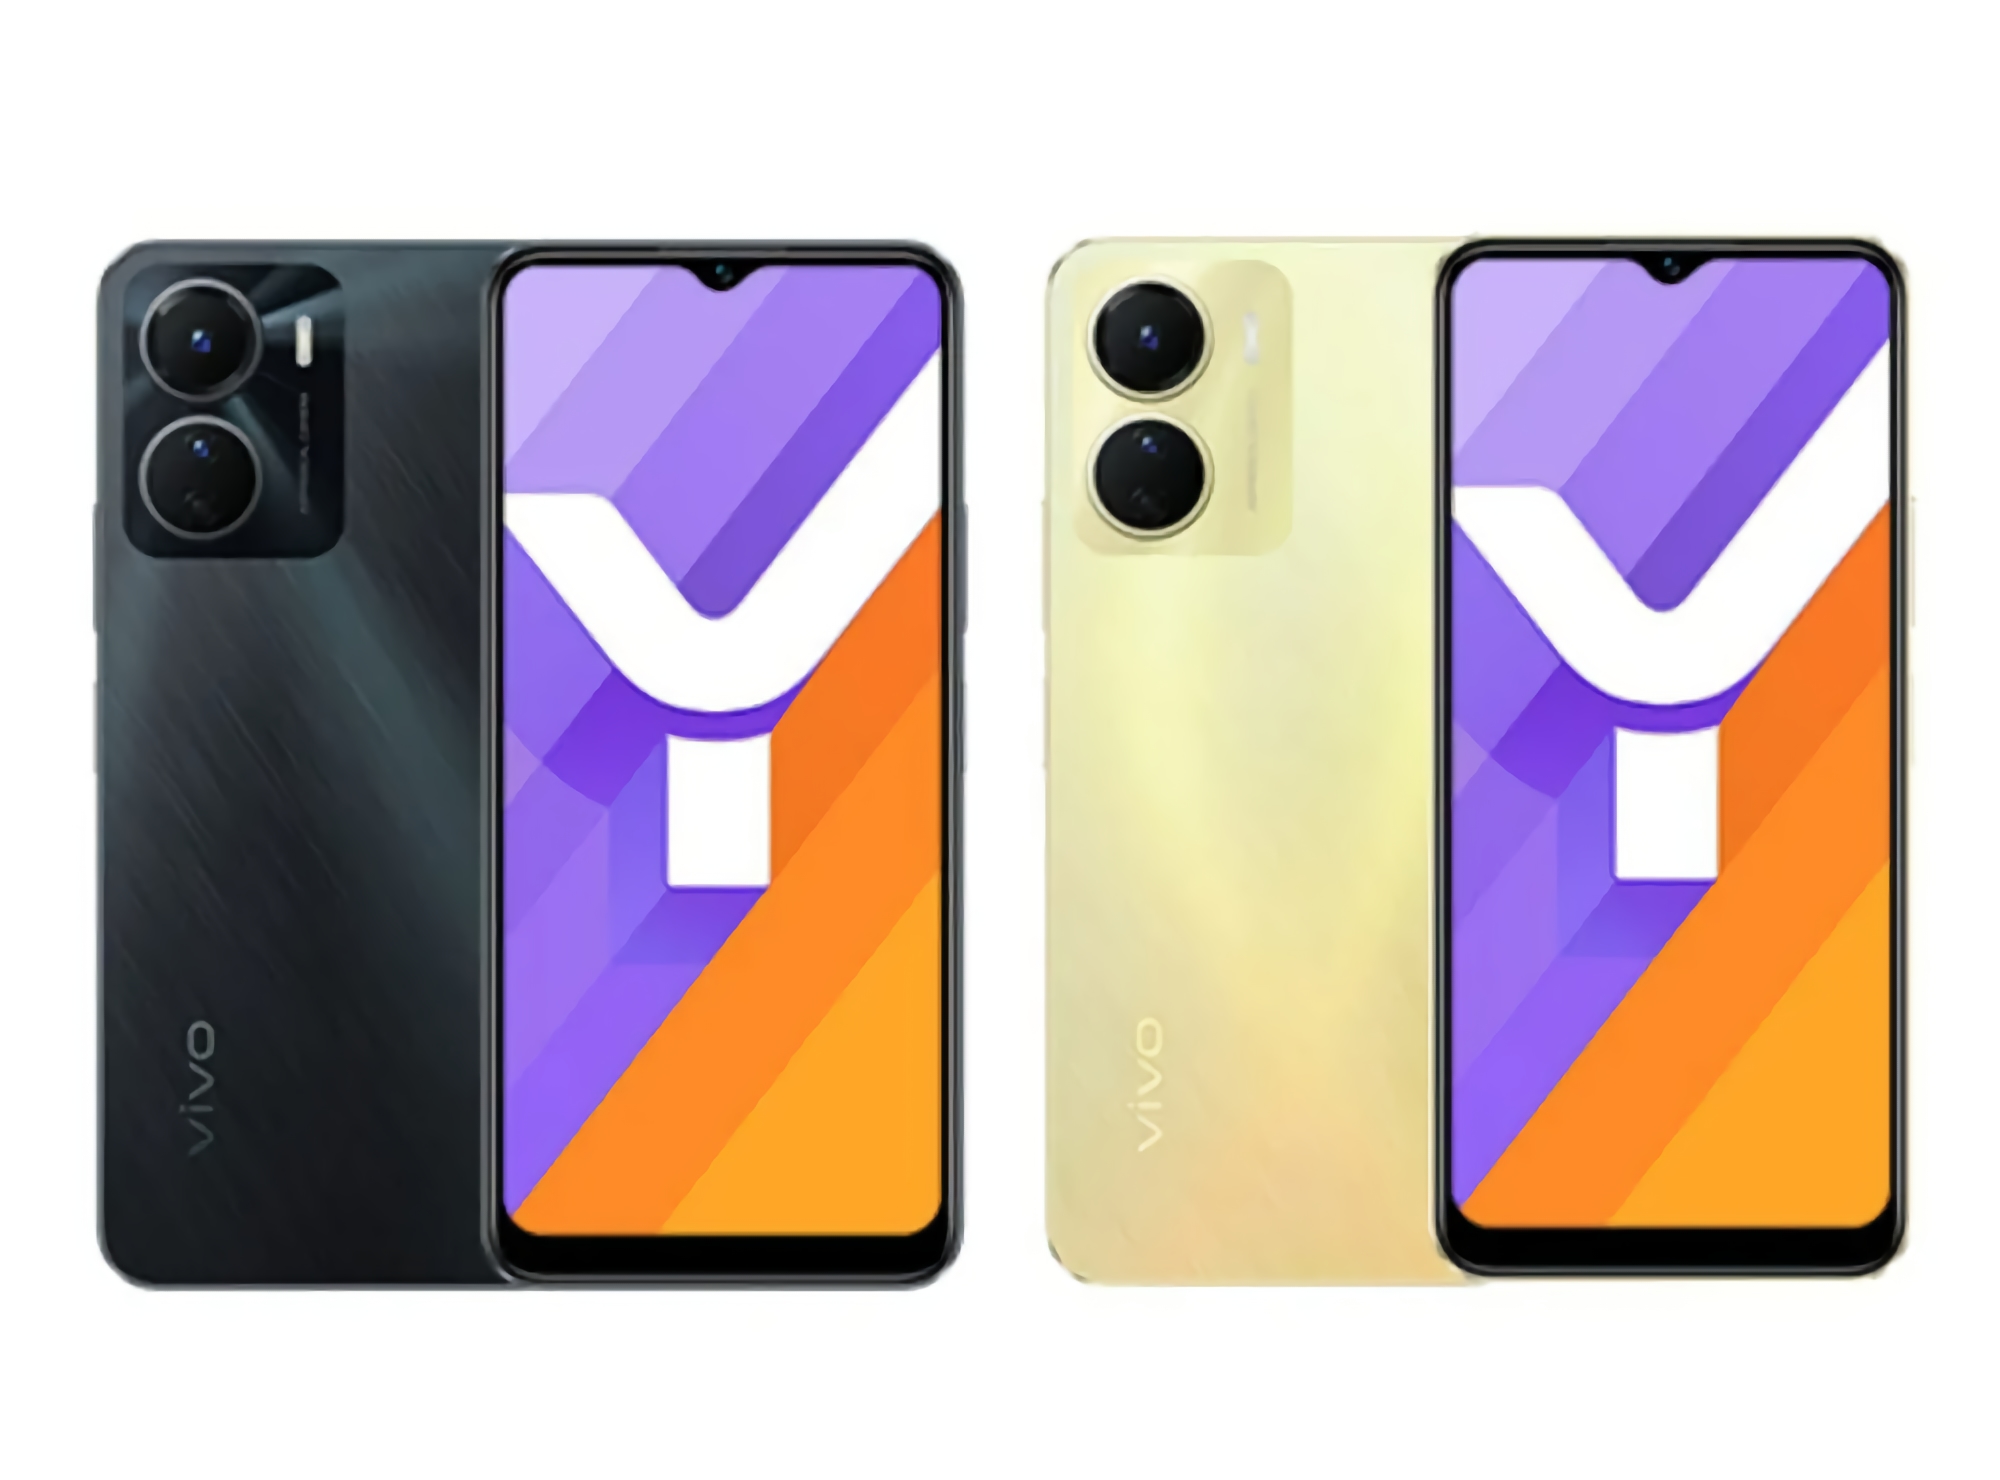 vivo Y16 4G: budżetowy smartfon z układem MediaTek Helio P35, podwójnym aparatem i baterią 5000 mAh